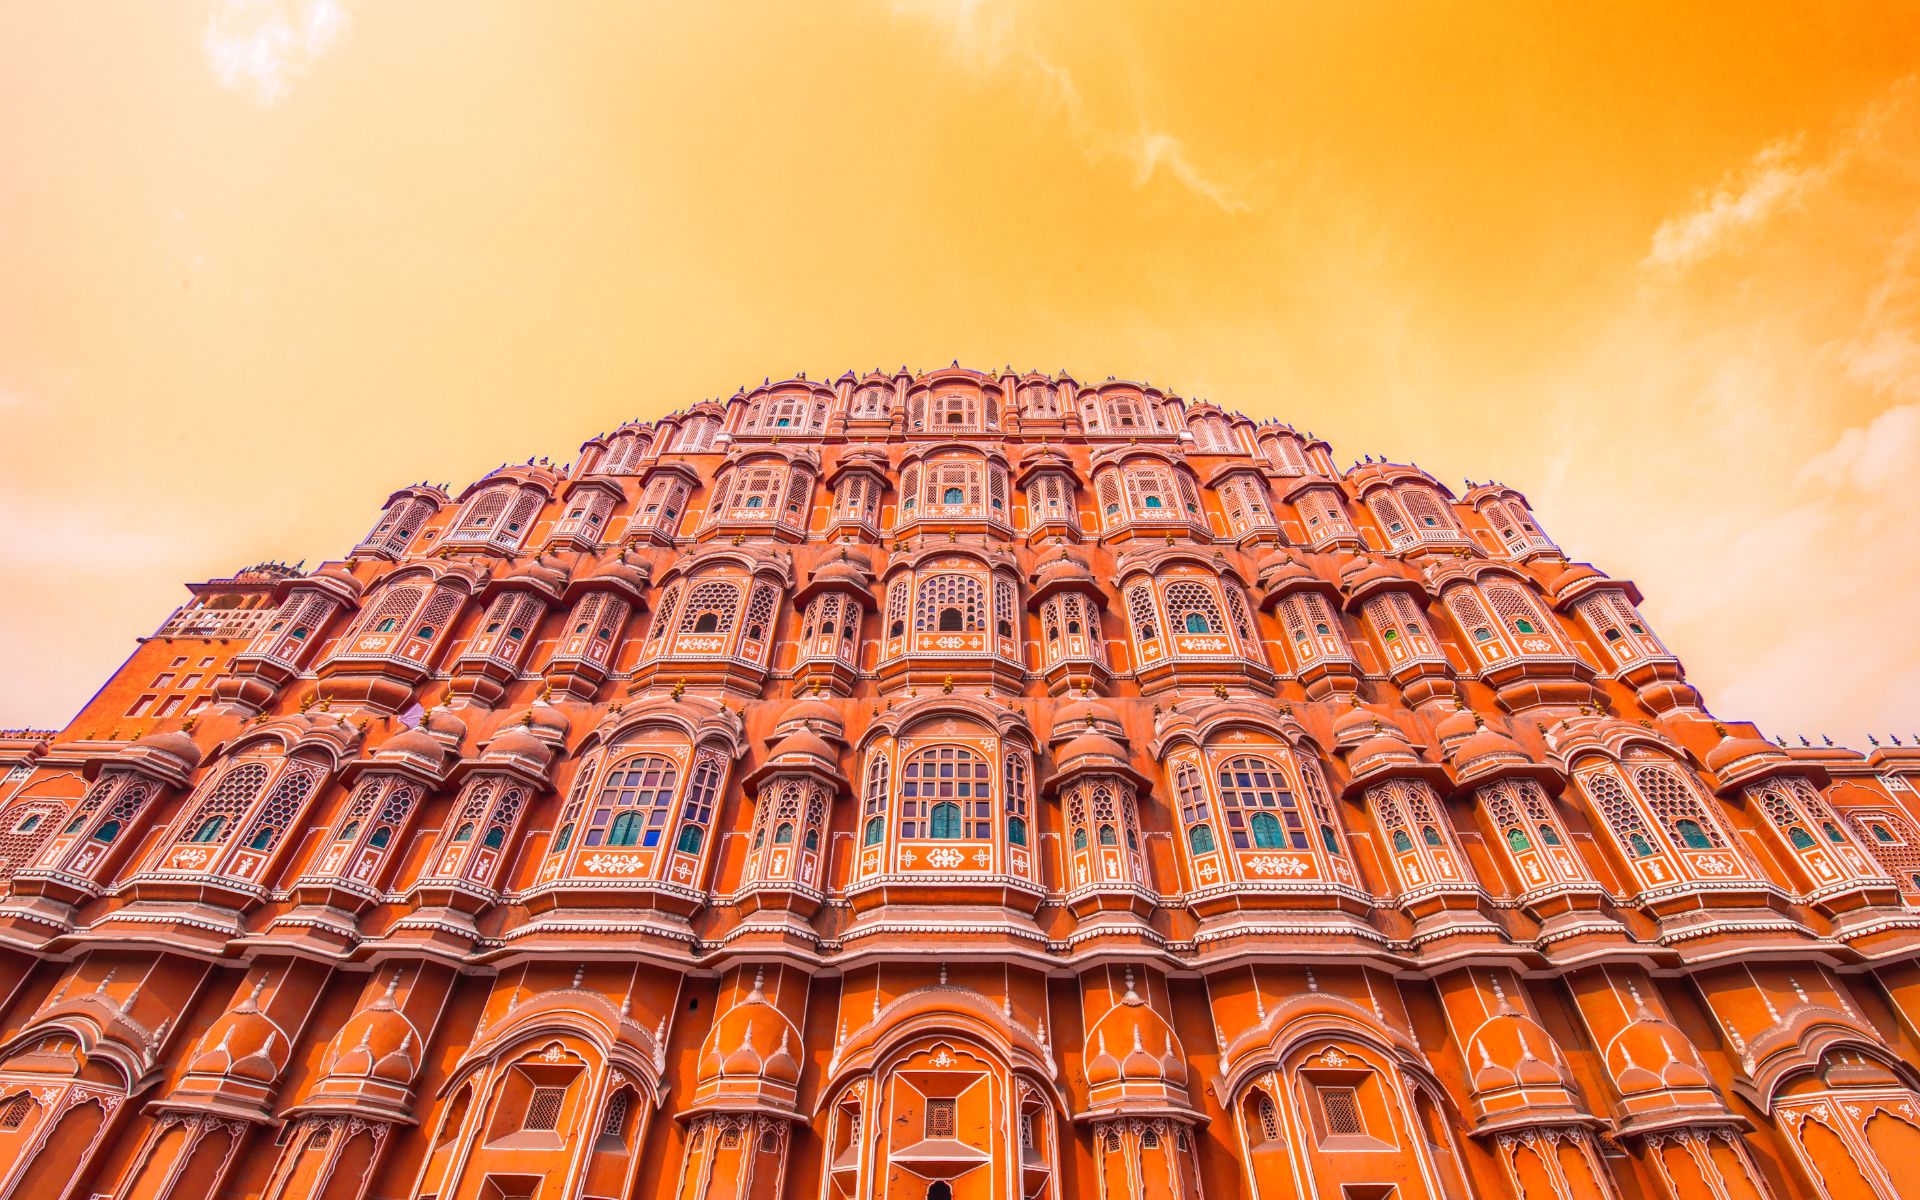 Intia jaipur pink palace